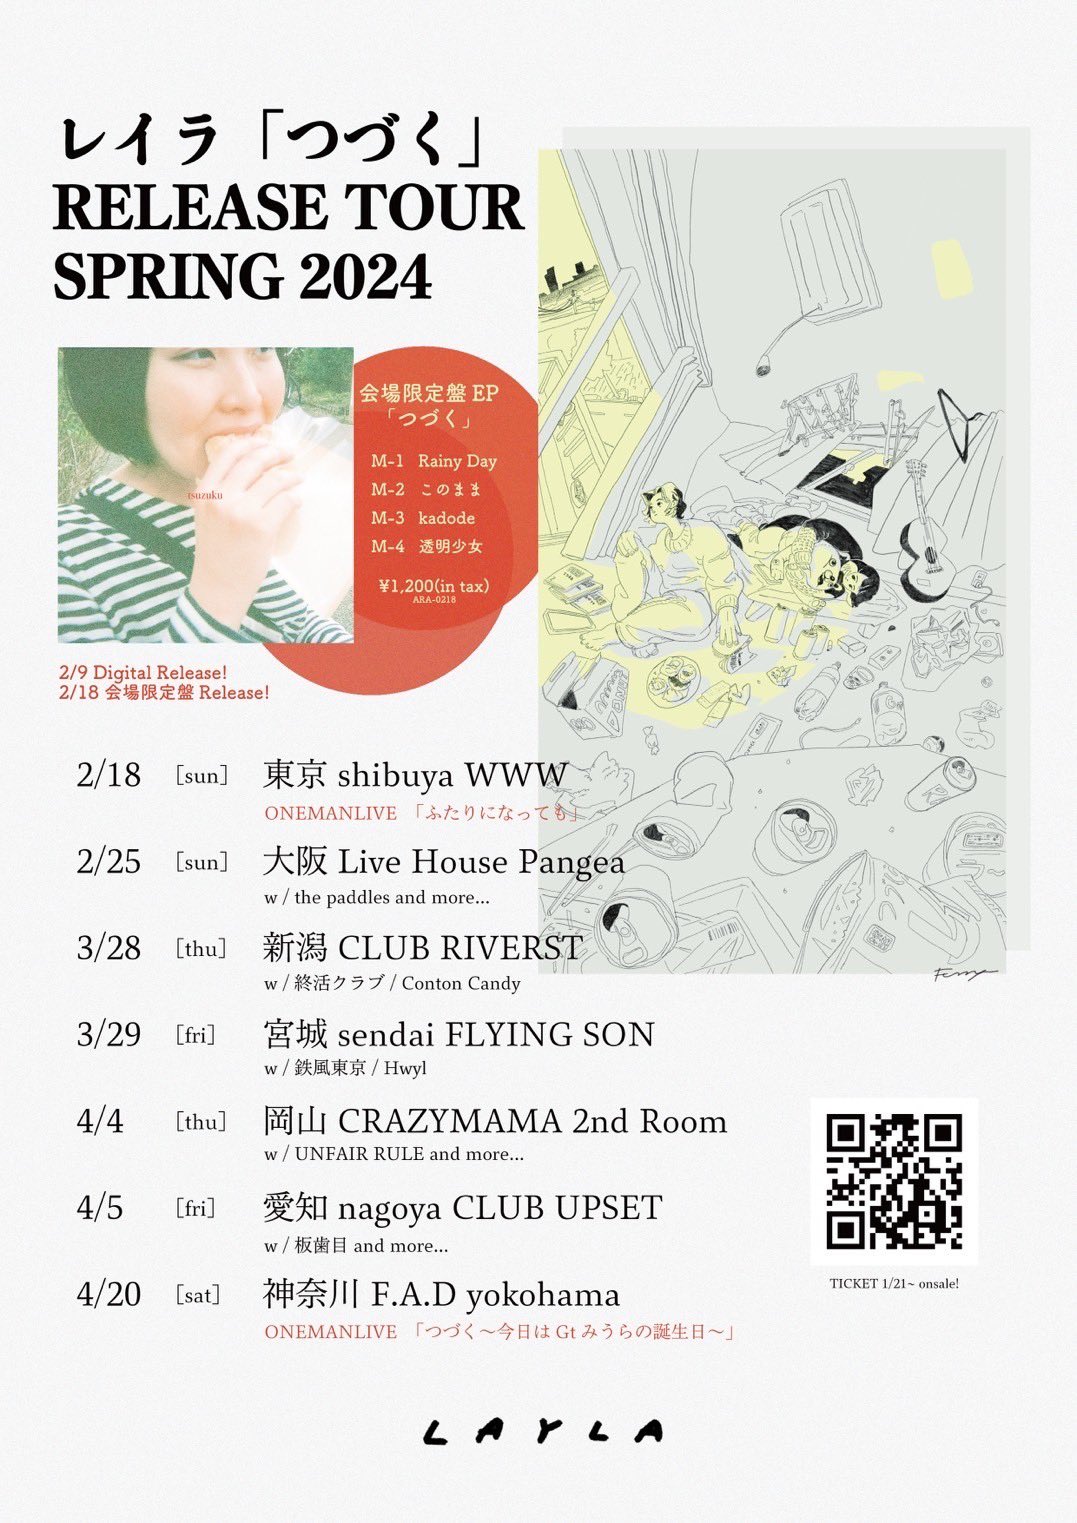 レイラ「つづく」Release Tour Spring 2024